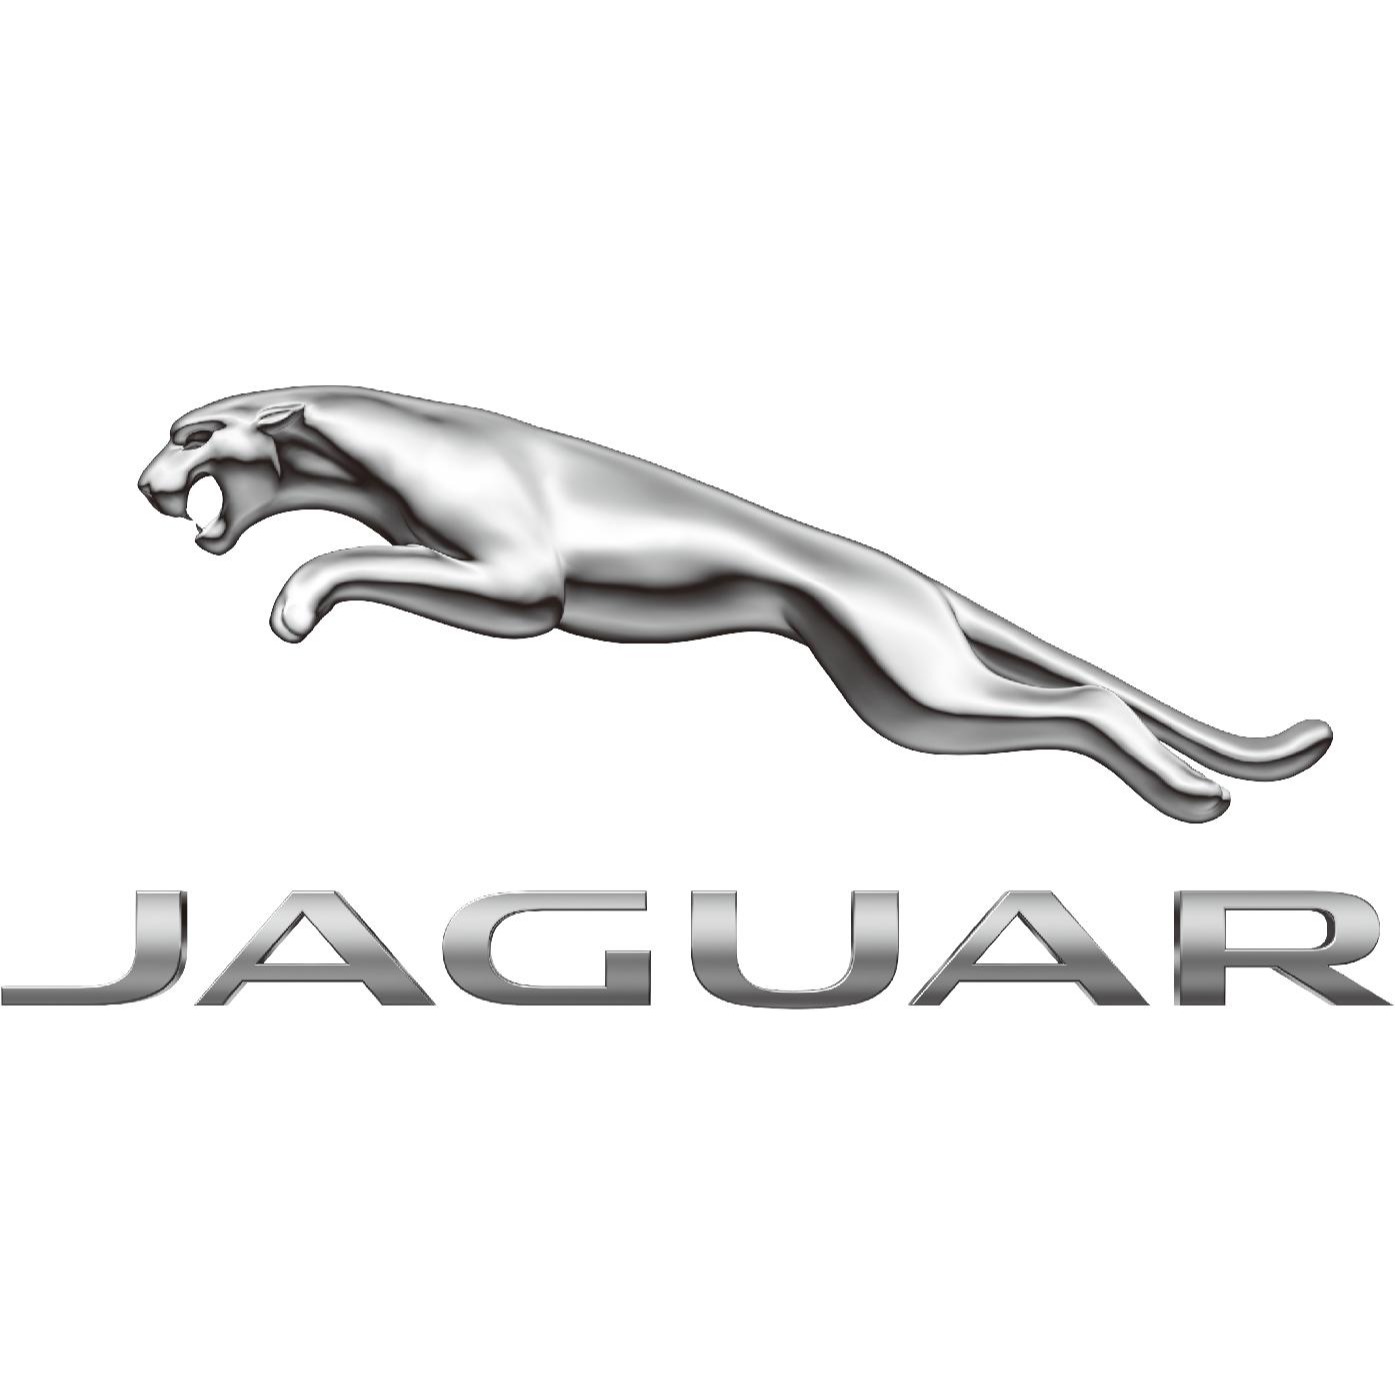 ジャガー・ランドローバー 幕張 - Jaguar Dealer - 千葉市 - 043-305-4924 Japan | ShowMeLocal.com